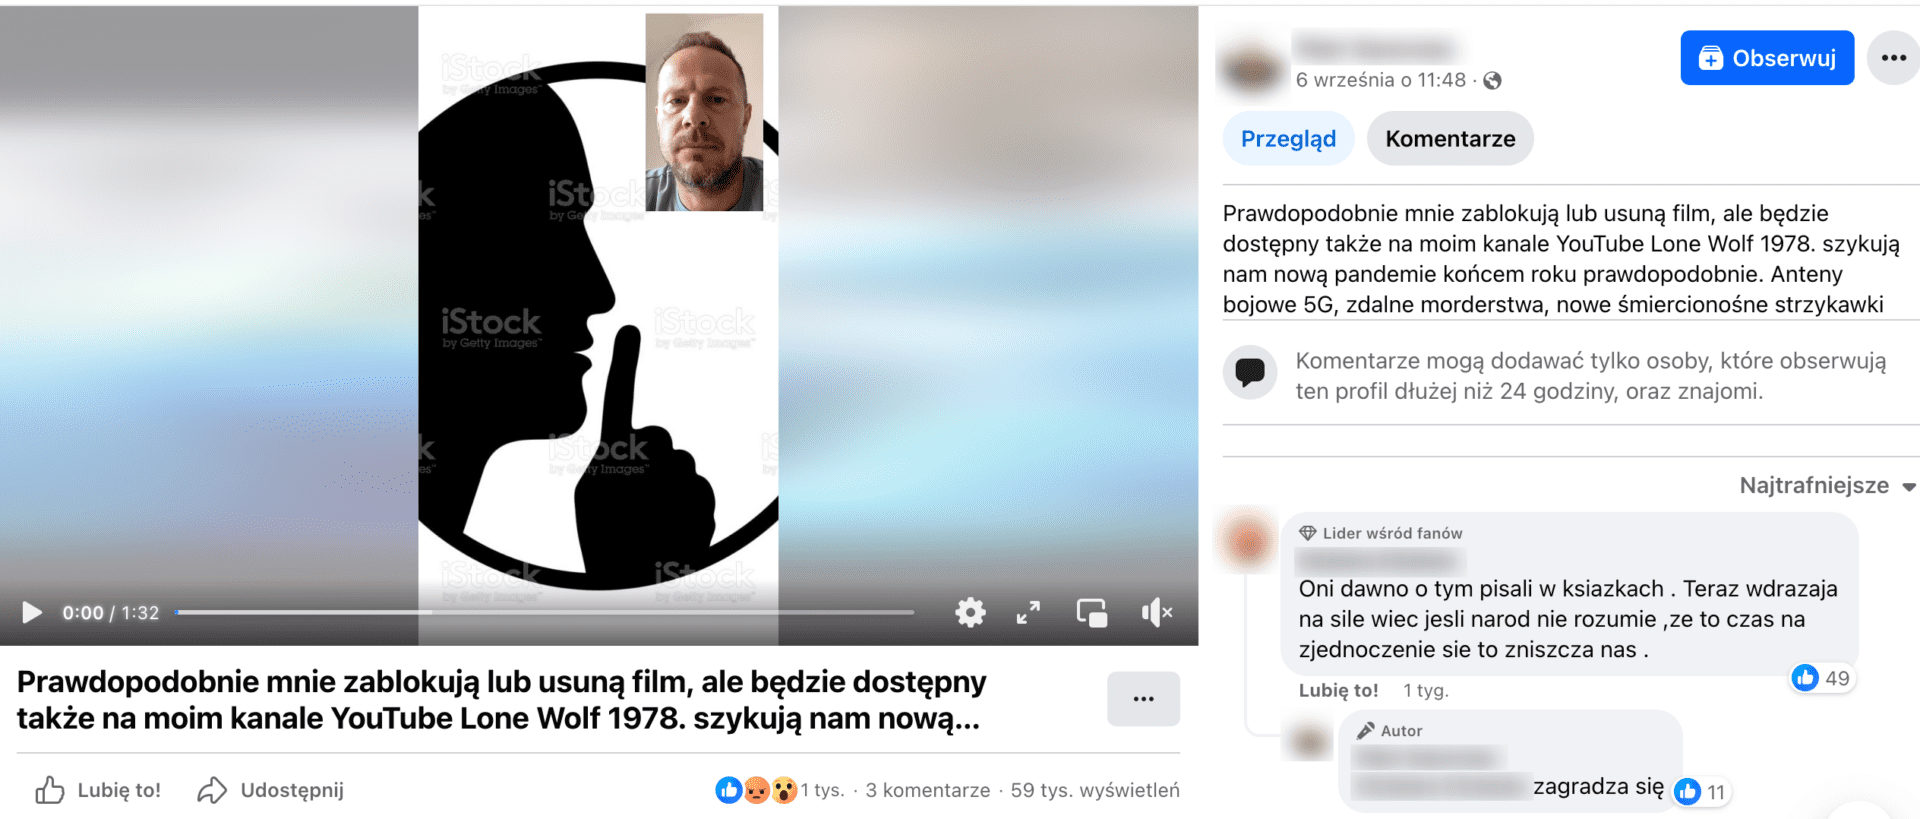 Zrzut ekranu posta na Facebooku. W kadrze dołączonego filmu jest grafika profilu twarzy człowieka, który palcem wskazującym pokazuje znak ciszy. W prawym górnym rogu widnieje twarz mężczyzny z zarostem, użytkownika, który ogląda film.